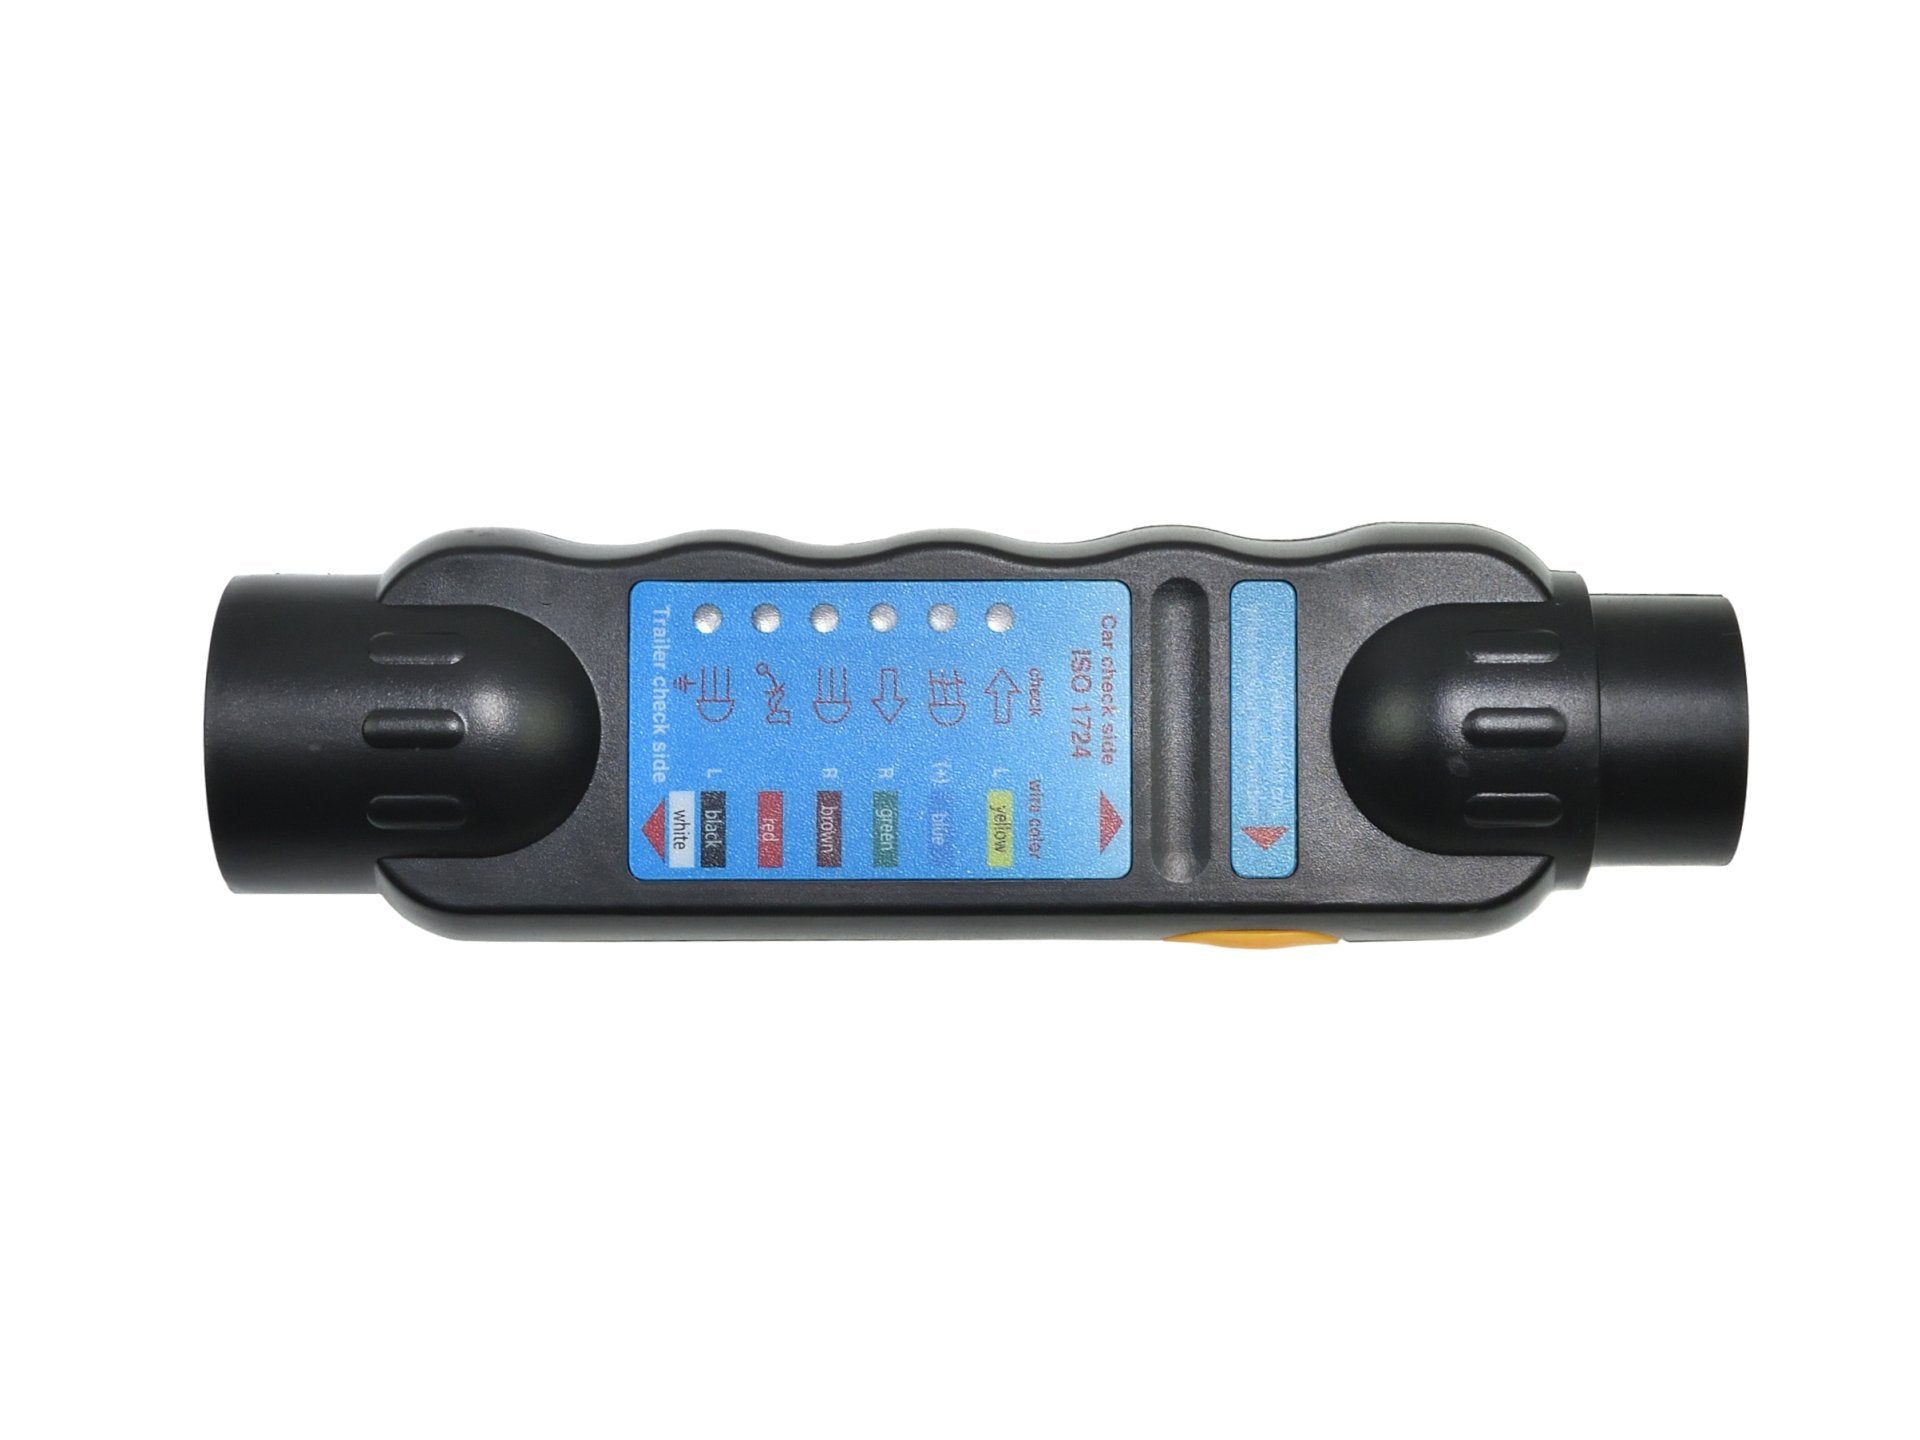 Trekhaakverlichtingstester voor autoaanhangers met adapters, 12v-stekker en stopcontact 7 - 13-polig - spo-cs-uitgeschakeld - spo-standaard - spo-di